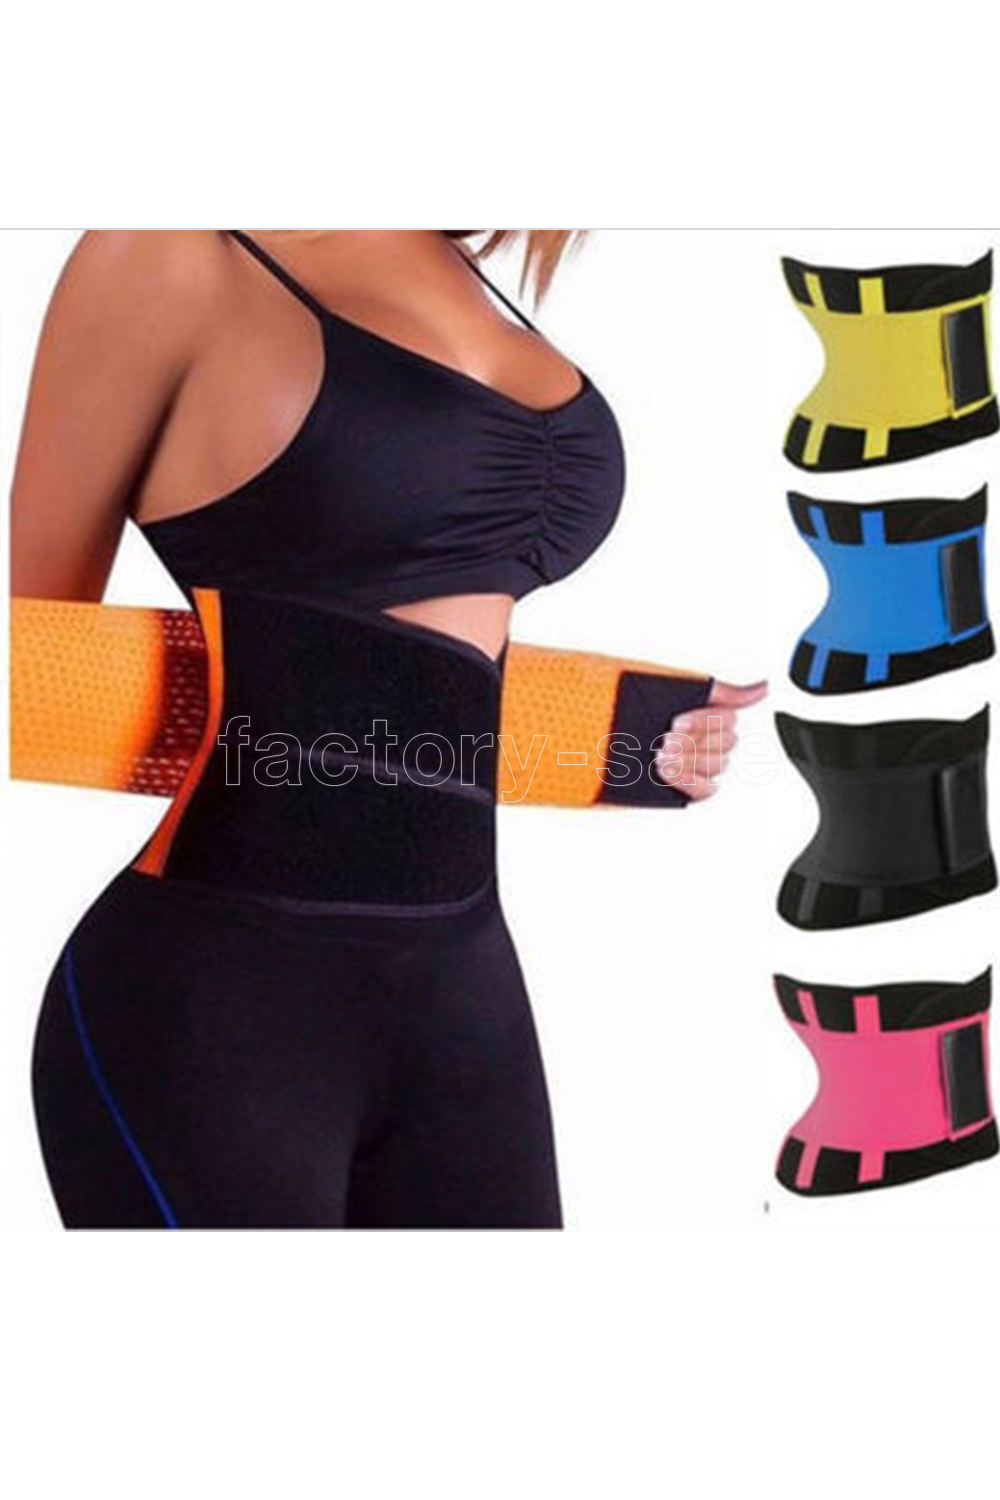 

Plus Size Body Shaper Waist Trainer Belt Women Postpartum Belly Slimming Underwear Modeling Strap Shapewear Tummy Fitness Corset FY8052, Pink